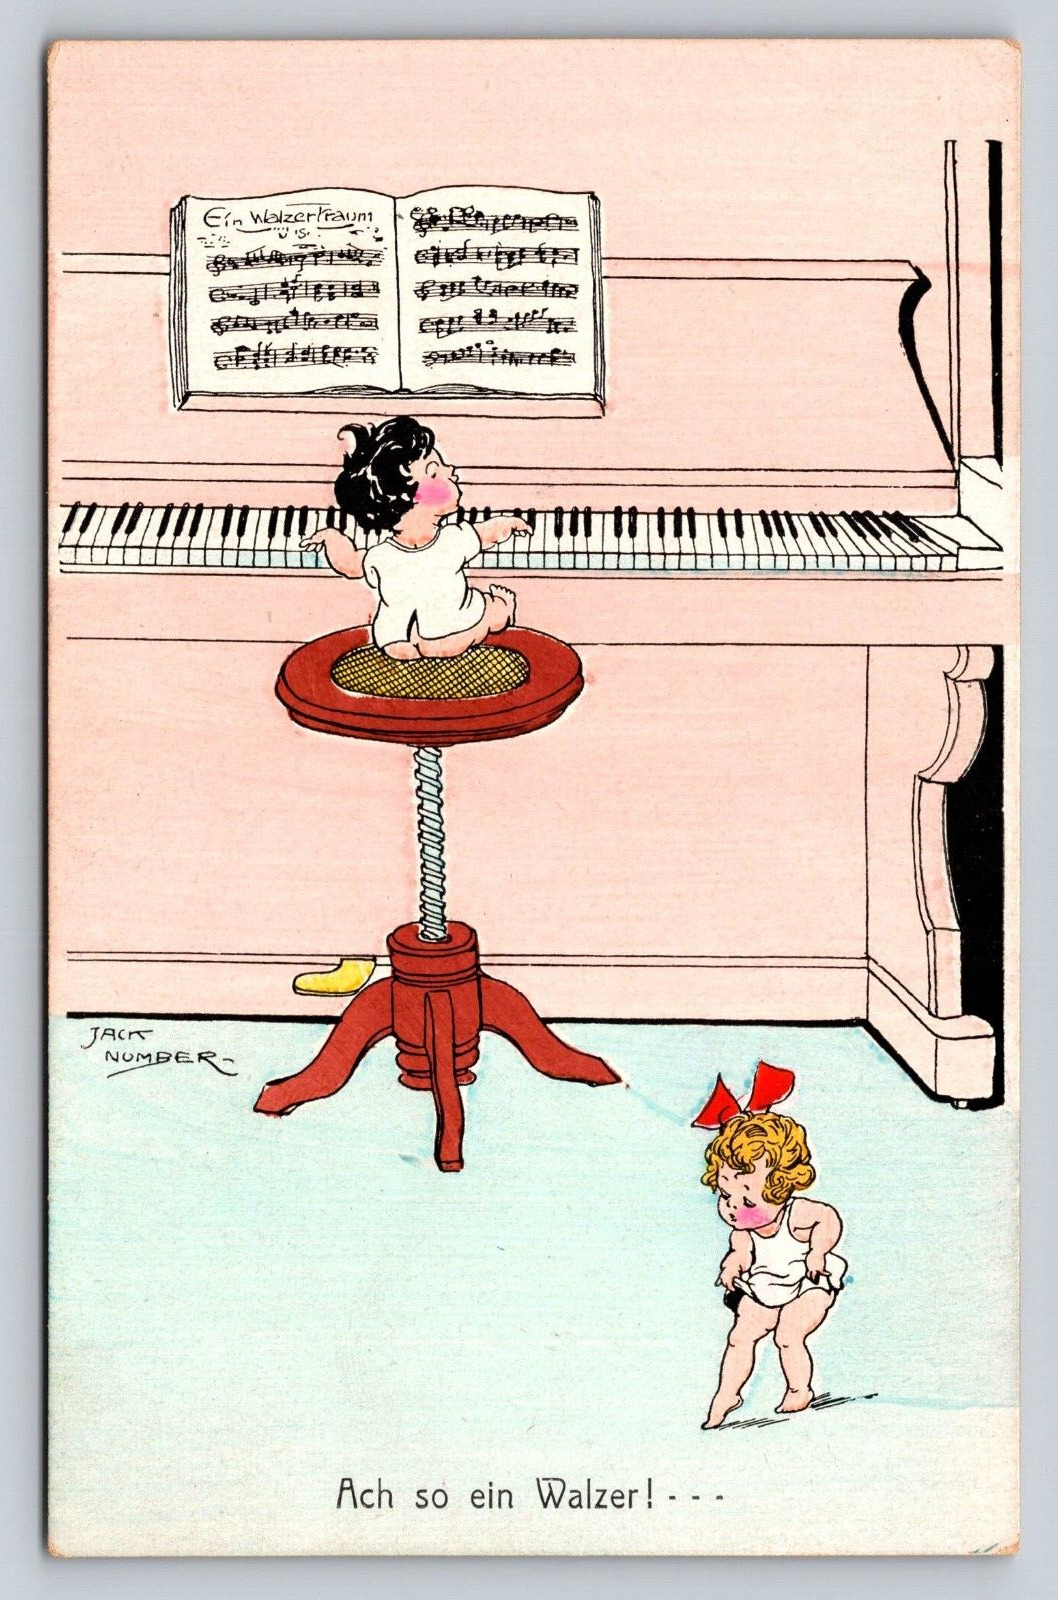 Antique German PC Jack Number Ach so ein Walzer Babies Play Piano Dance Waltz